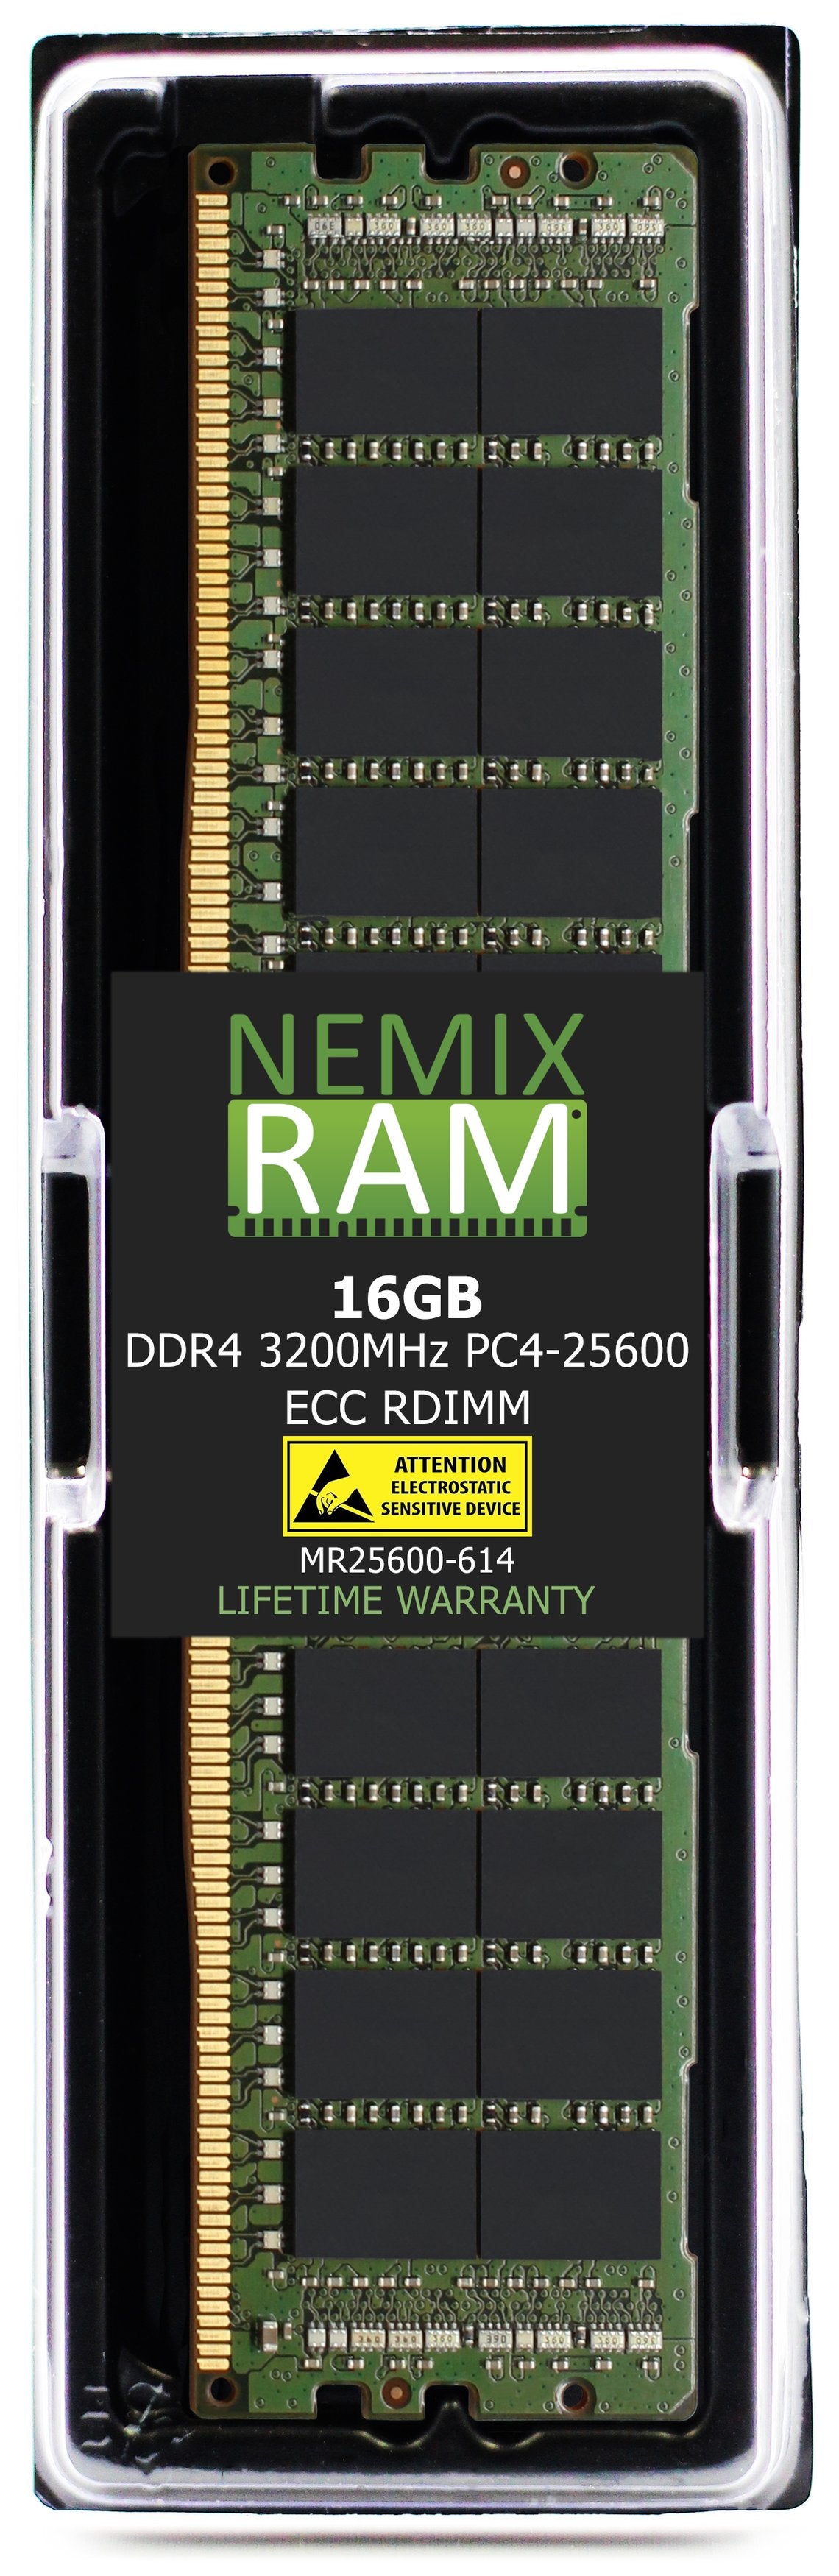 16GB DDR4 3200MHZ PC4-25600 RDIMM Compatible with Supermicro MEM-DR416LA-ER32